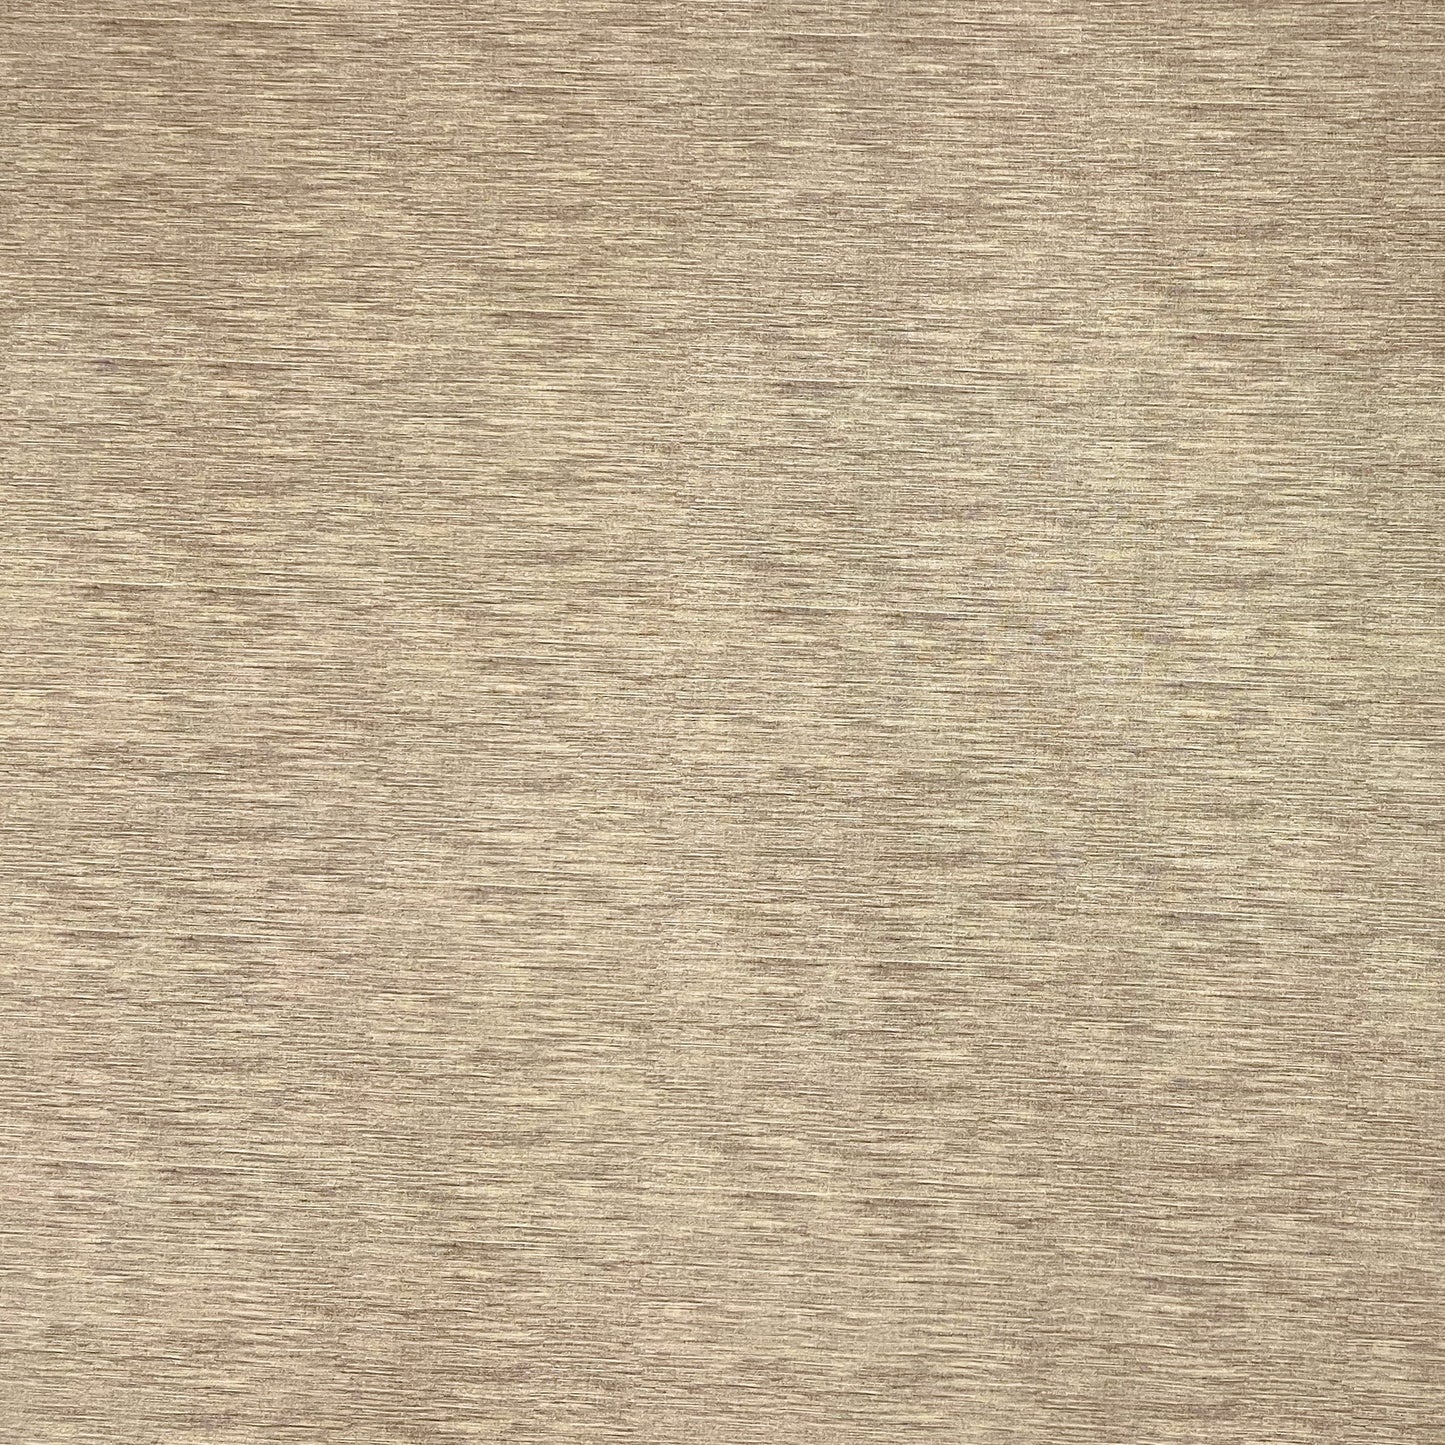 Wachstuch Tischdecke geprägt P733-11 Leinenstruktur beige creme eckig rund oval